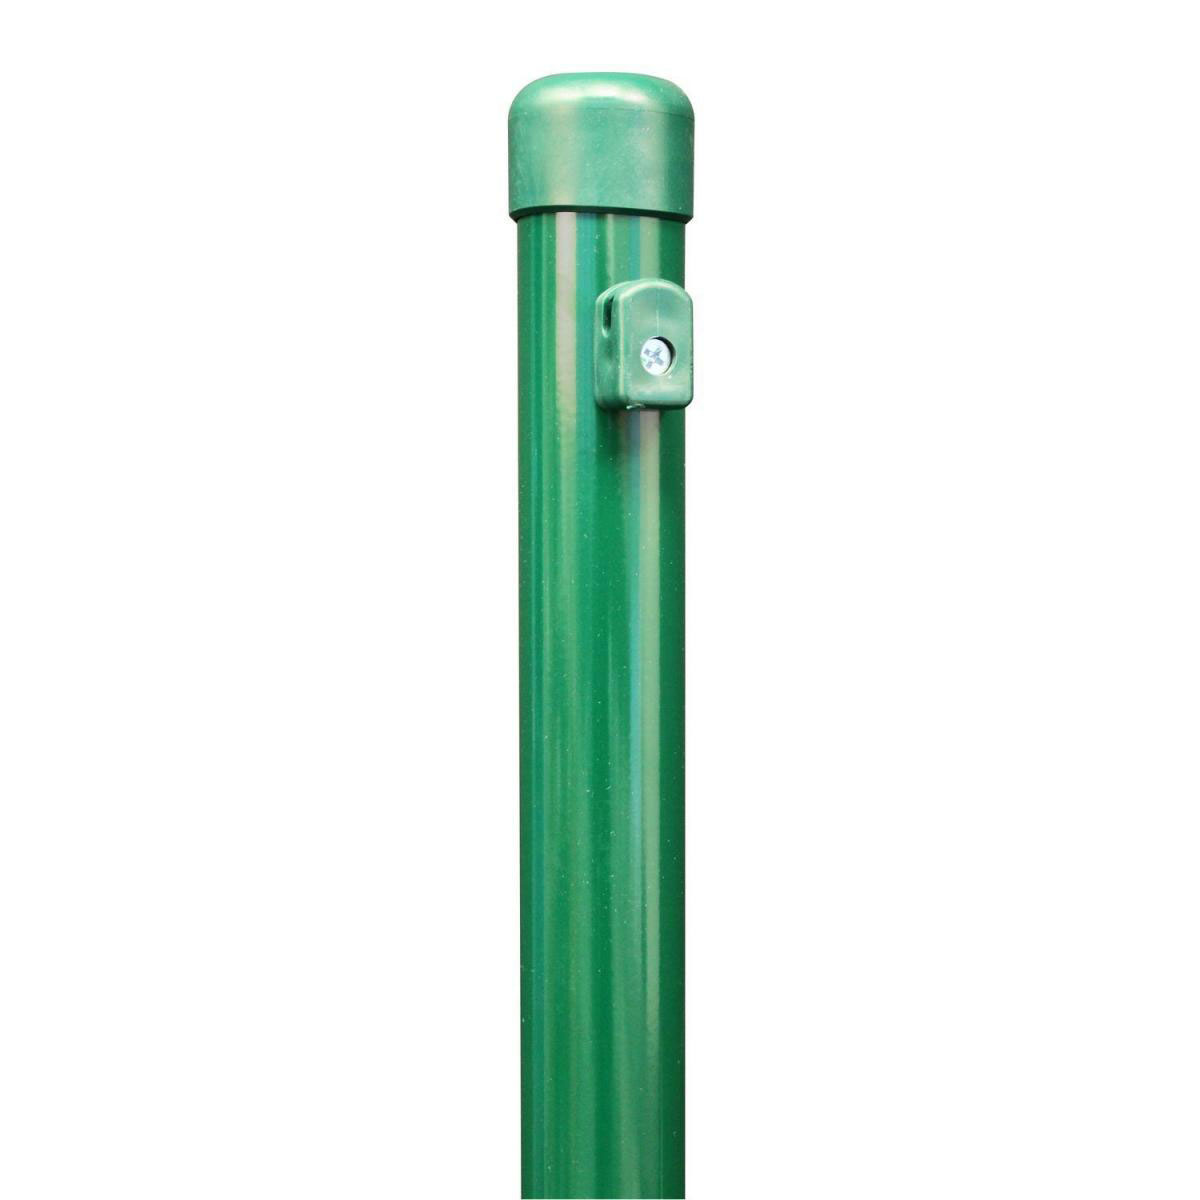 Zaunpfosten für Maschendraht, grün, Höhe 2250 mm, Stärke 38 mm für Geflechthöhe 1750 mm